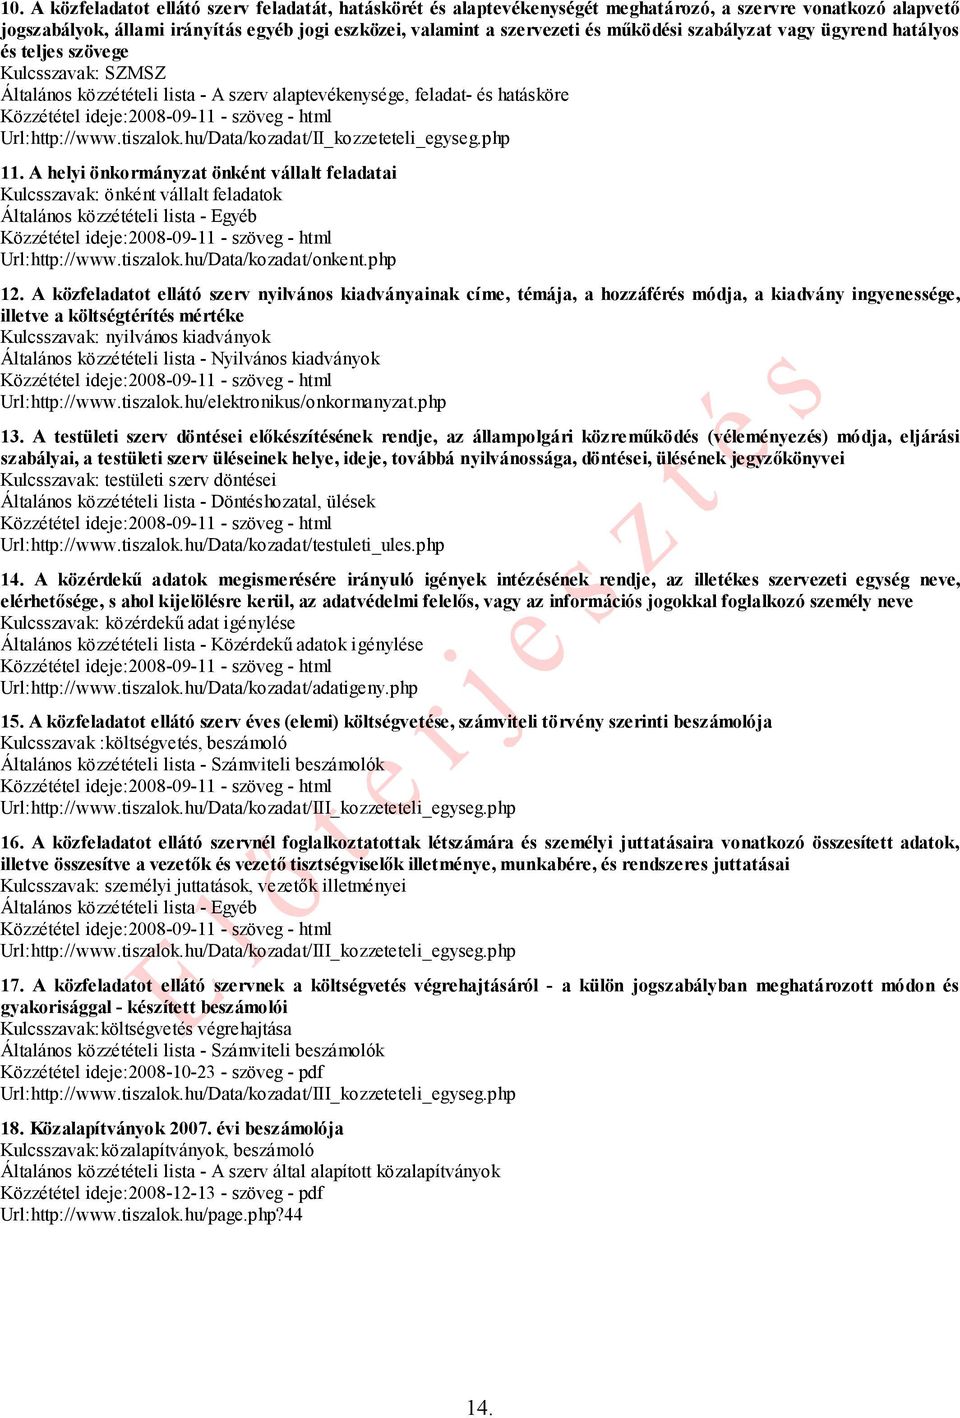 hu/Data/kozadat/II_kozzeteteli_egyseg.php 11. A helyi önkormányzat önként vállalt feladatai Kulcsszavak: önként vállalt feladatok Általános közzétételi lista - Egyéb Url:http://www.tiszalok.